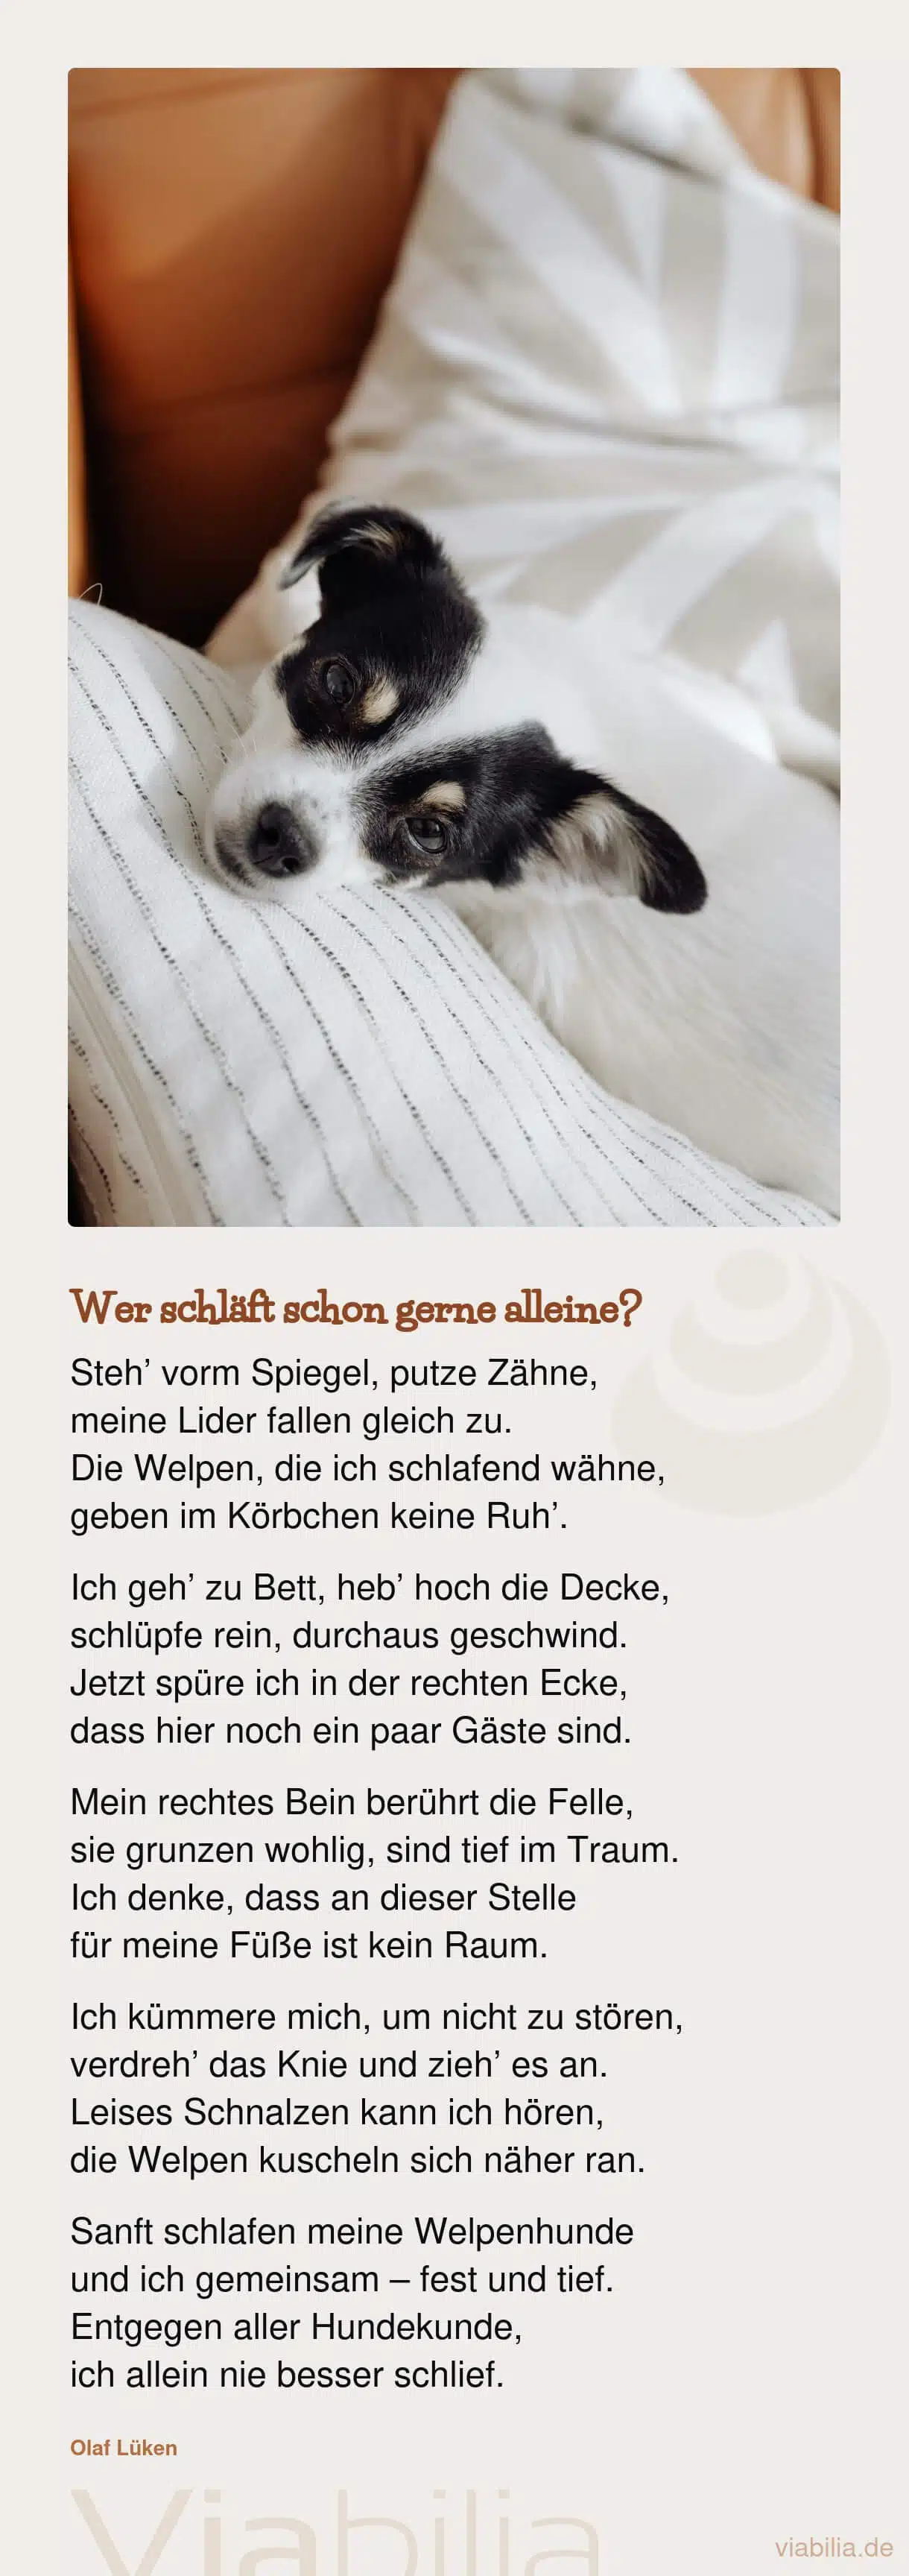 Lustiges Hundegedicht von Olaf Lüken: Wer schläft schon gerne alleine?